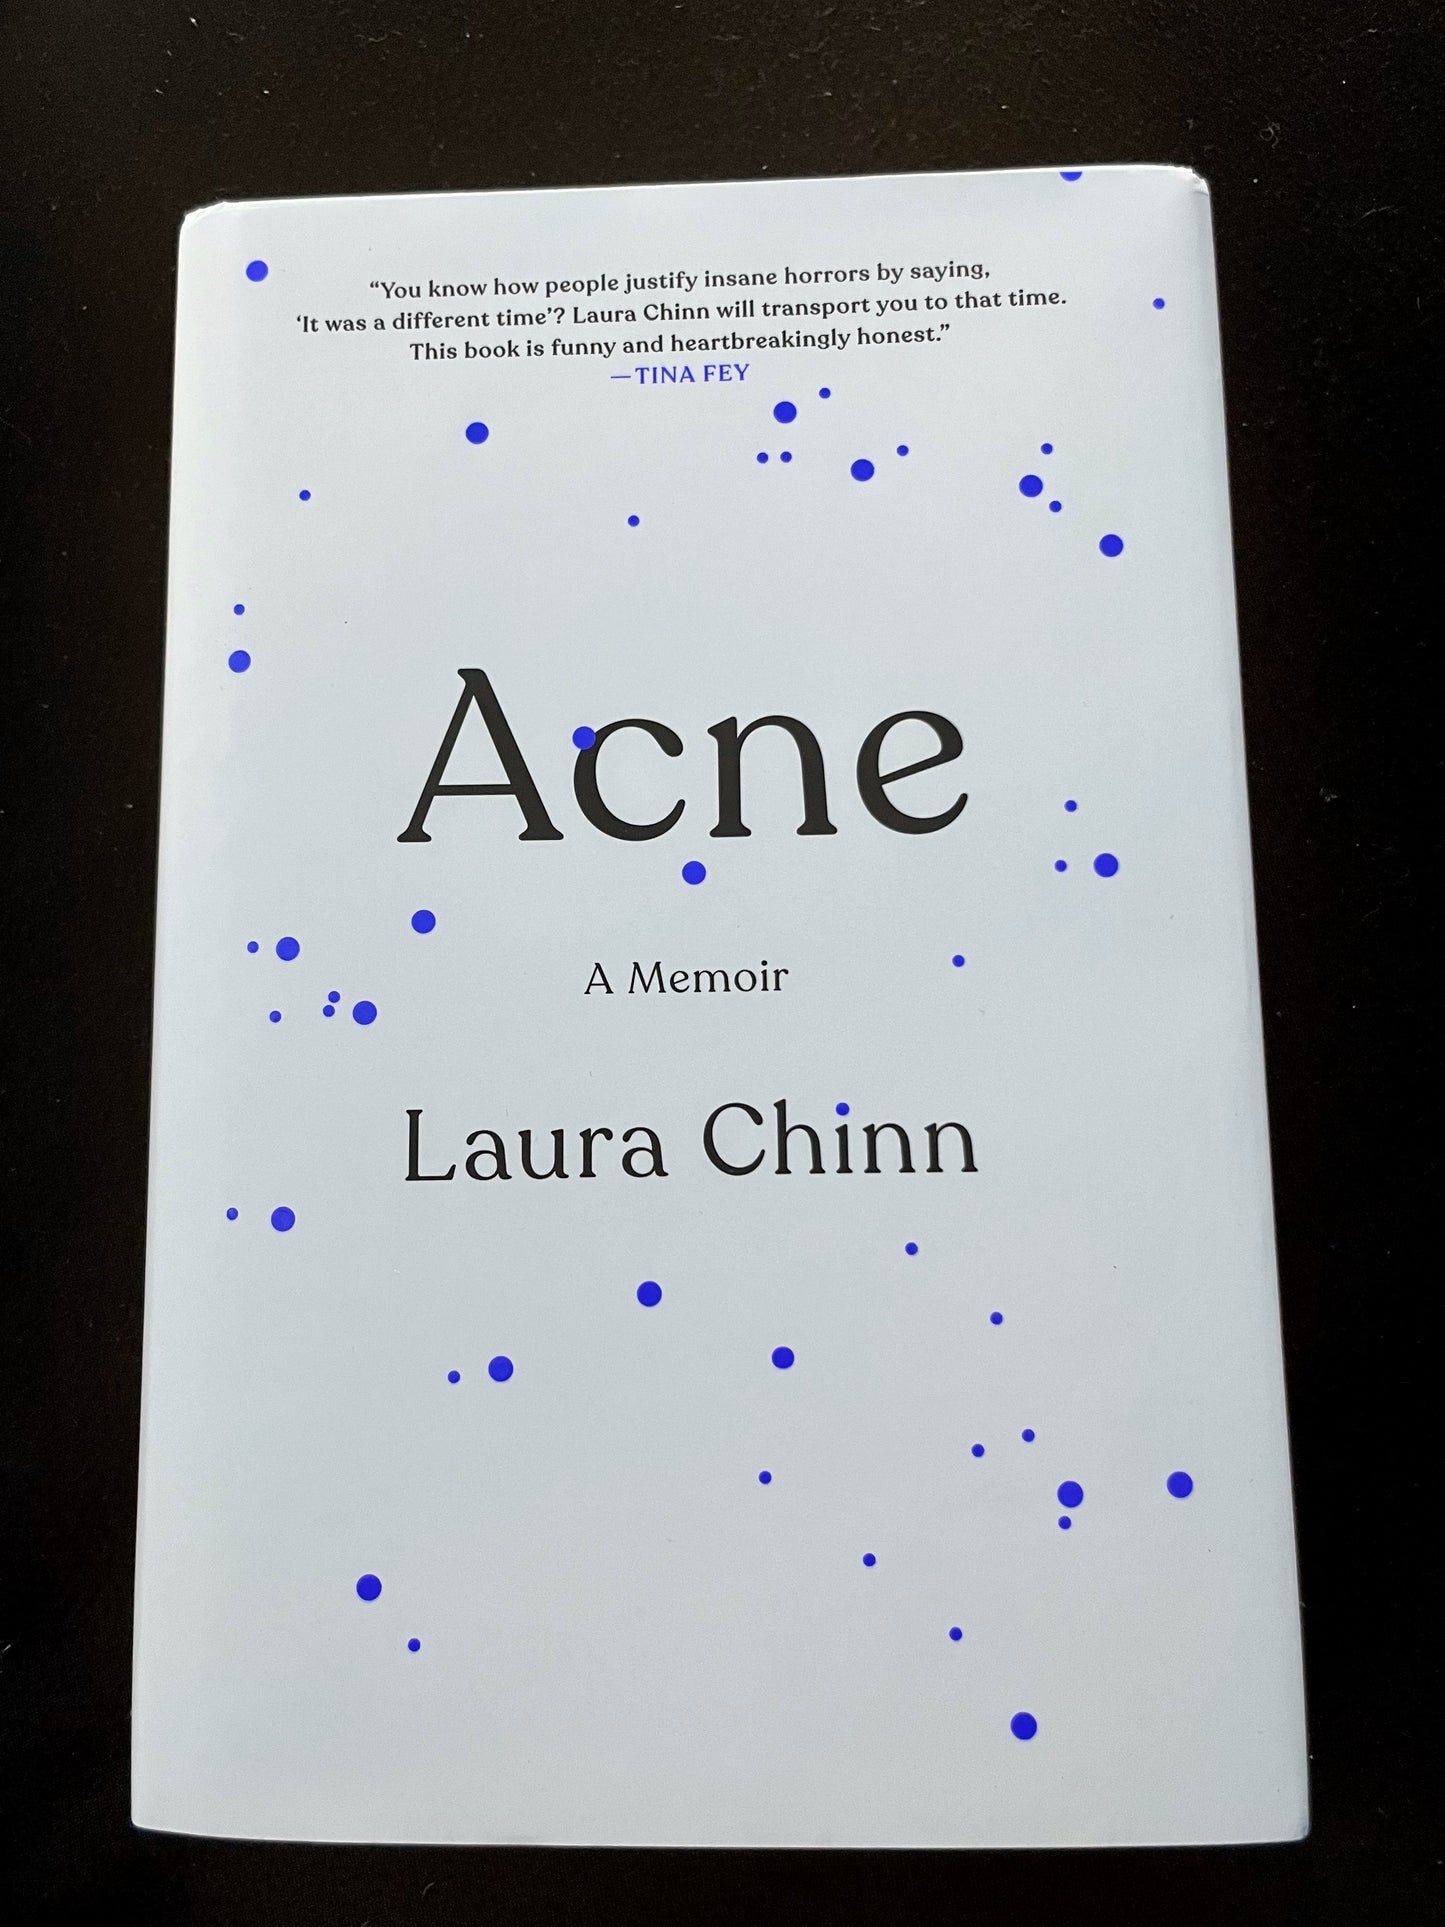 ACNE: A MEMOIR by Laura Chinn